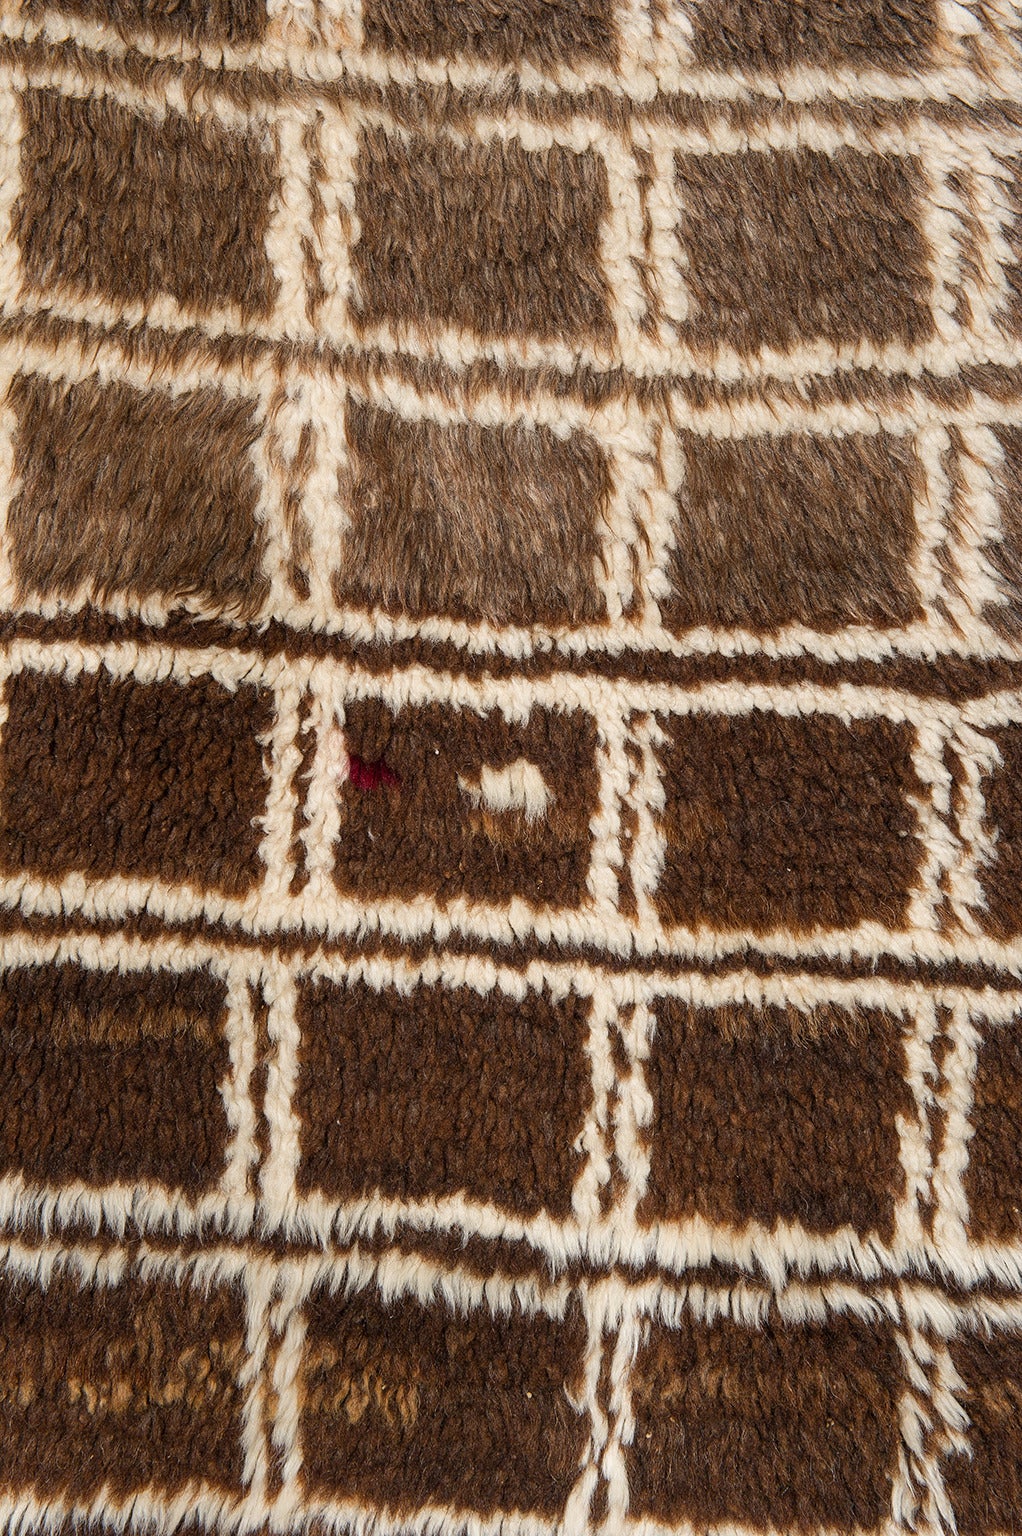 Vintage TULU o PATU (Decke), warme Kastanienfarbe und weiche Wolle : moderner minimalistischer Geschmack -
Geeignet auf einem Sessel, nicht nur als Teppich wie üblich -
nr. 391.